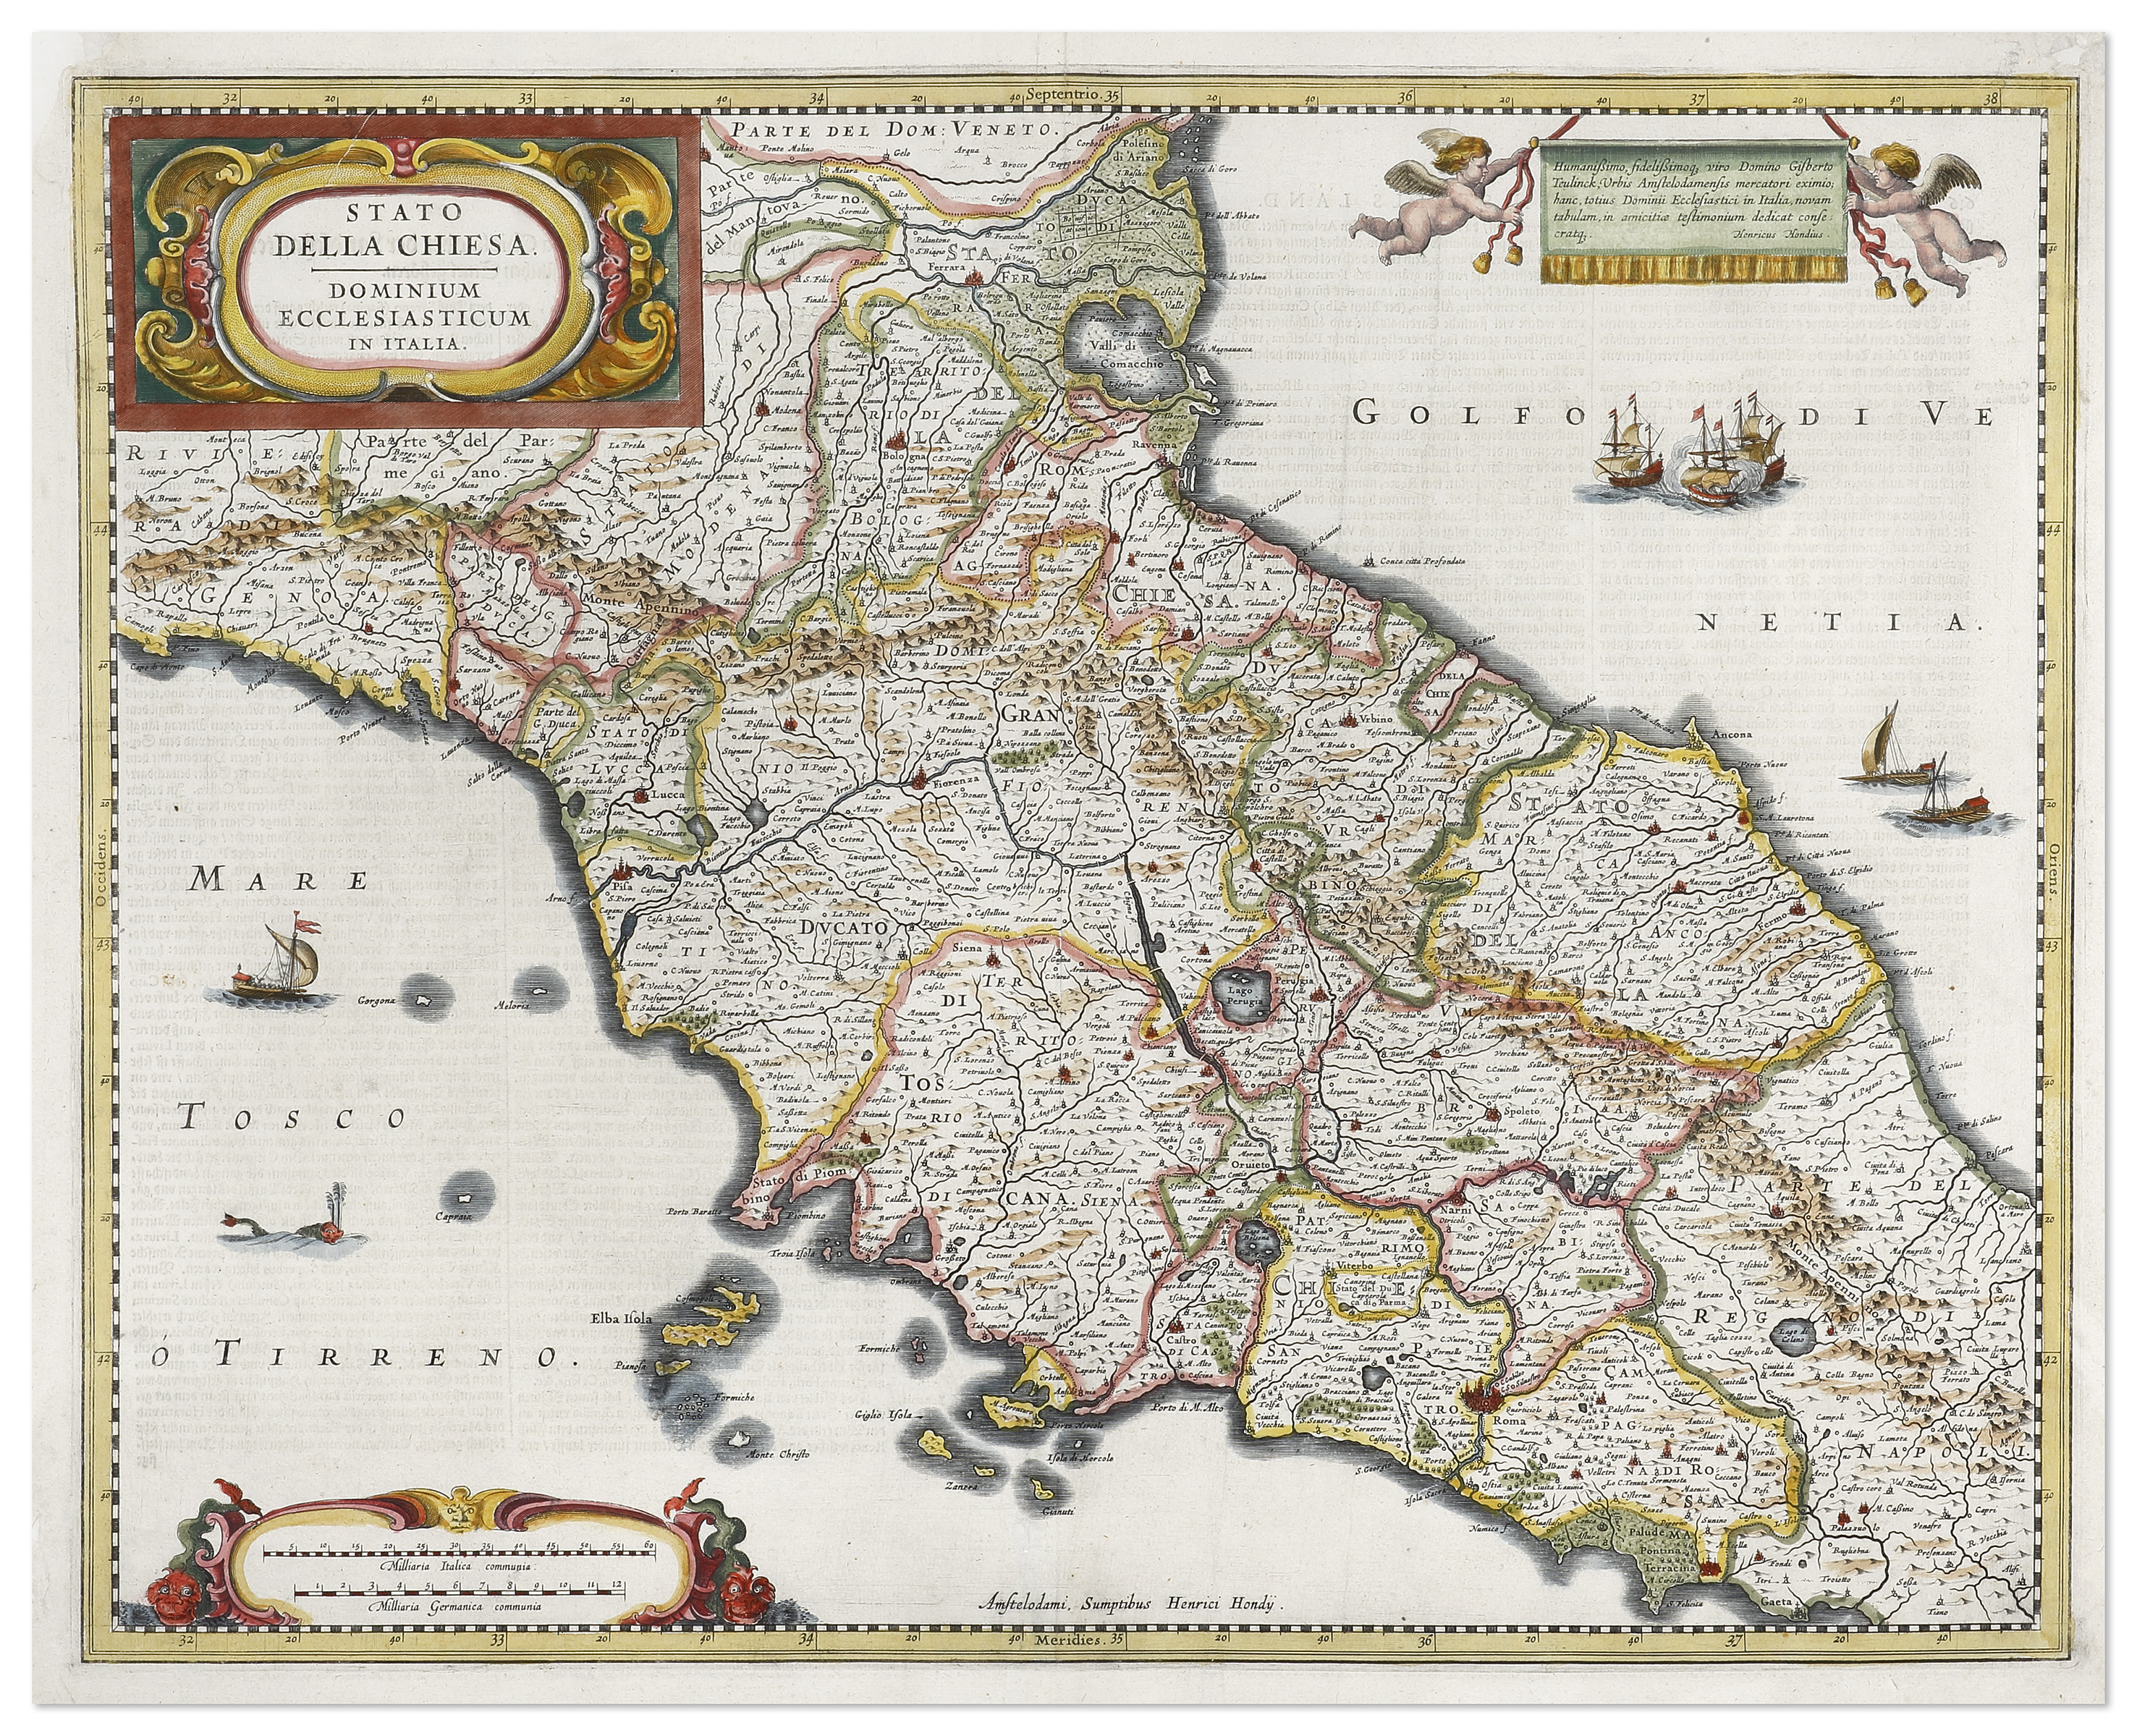 Stato della Chiesa Dominium Ecclesiasticum in Italia - Antique Map from 1633